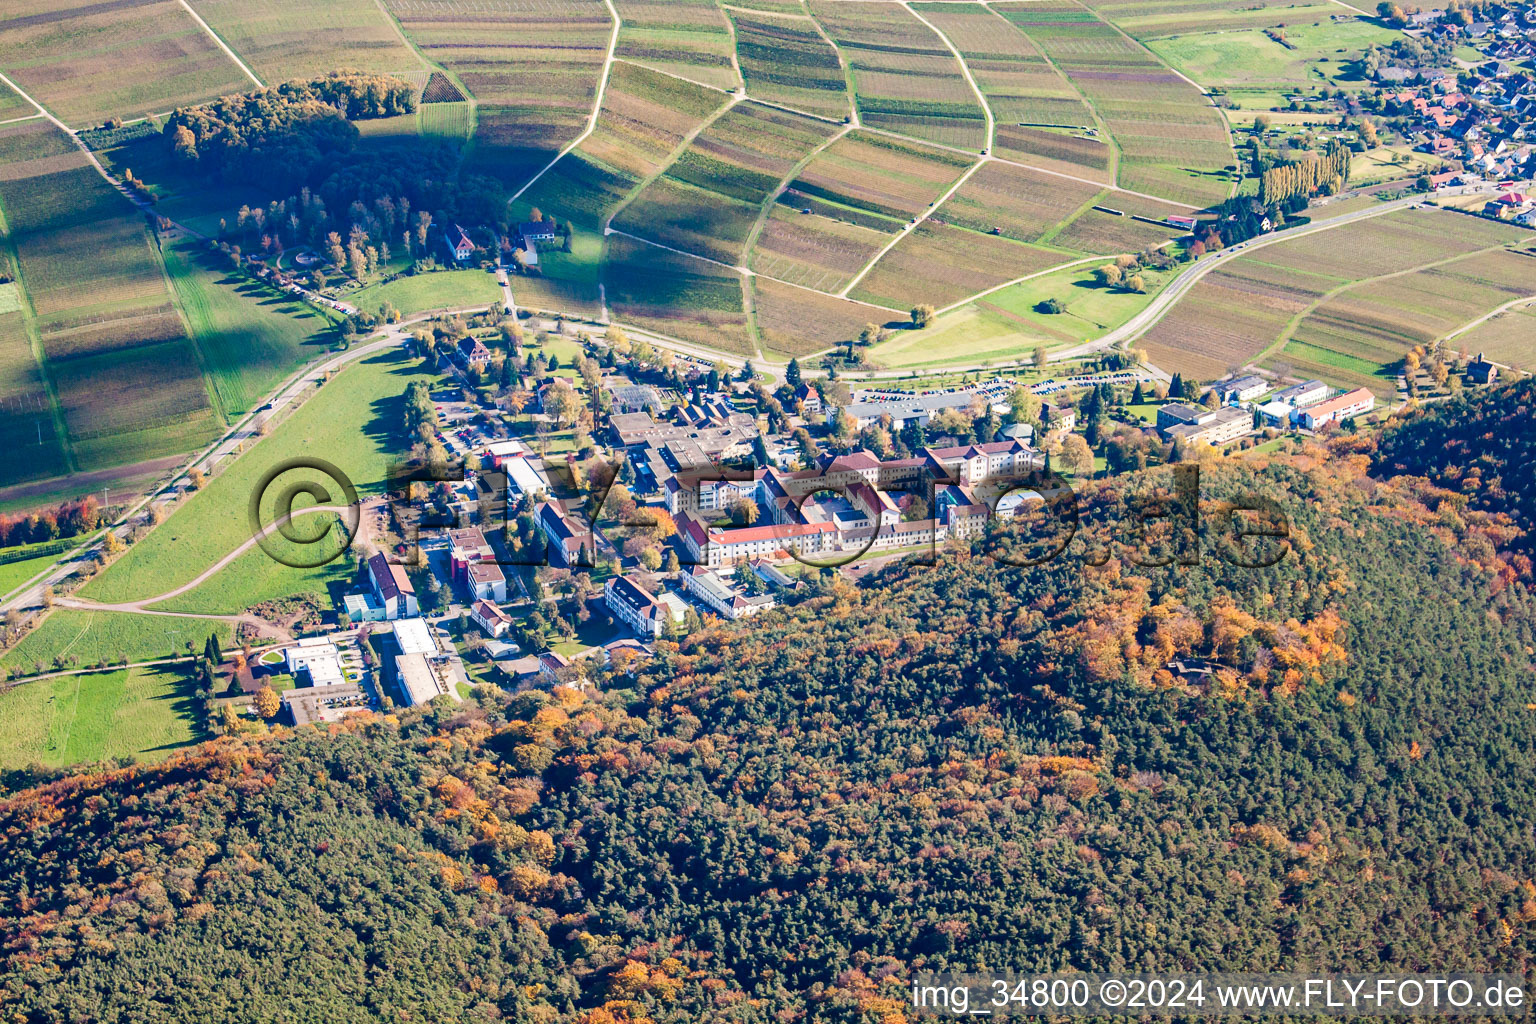 Vue aérienne de Terrain de l'hôpital Pfalzklinik Landeck à Klingenmünster dans le département Rhénanie-Palatinat, Allemagne